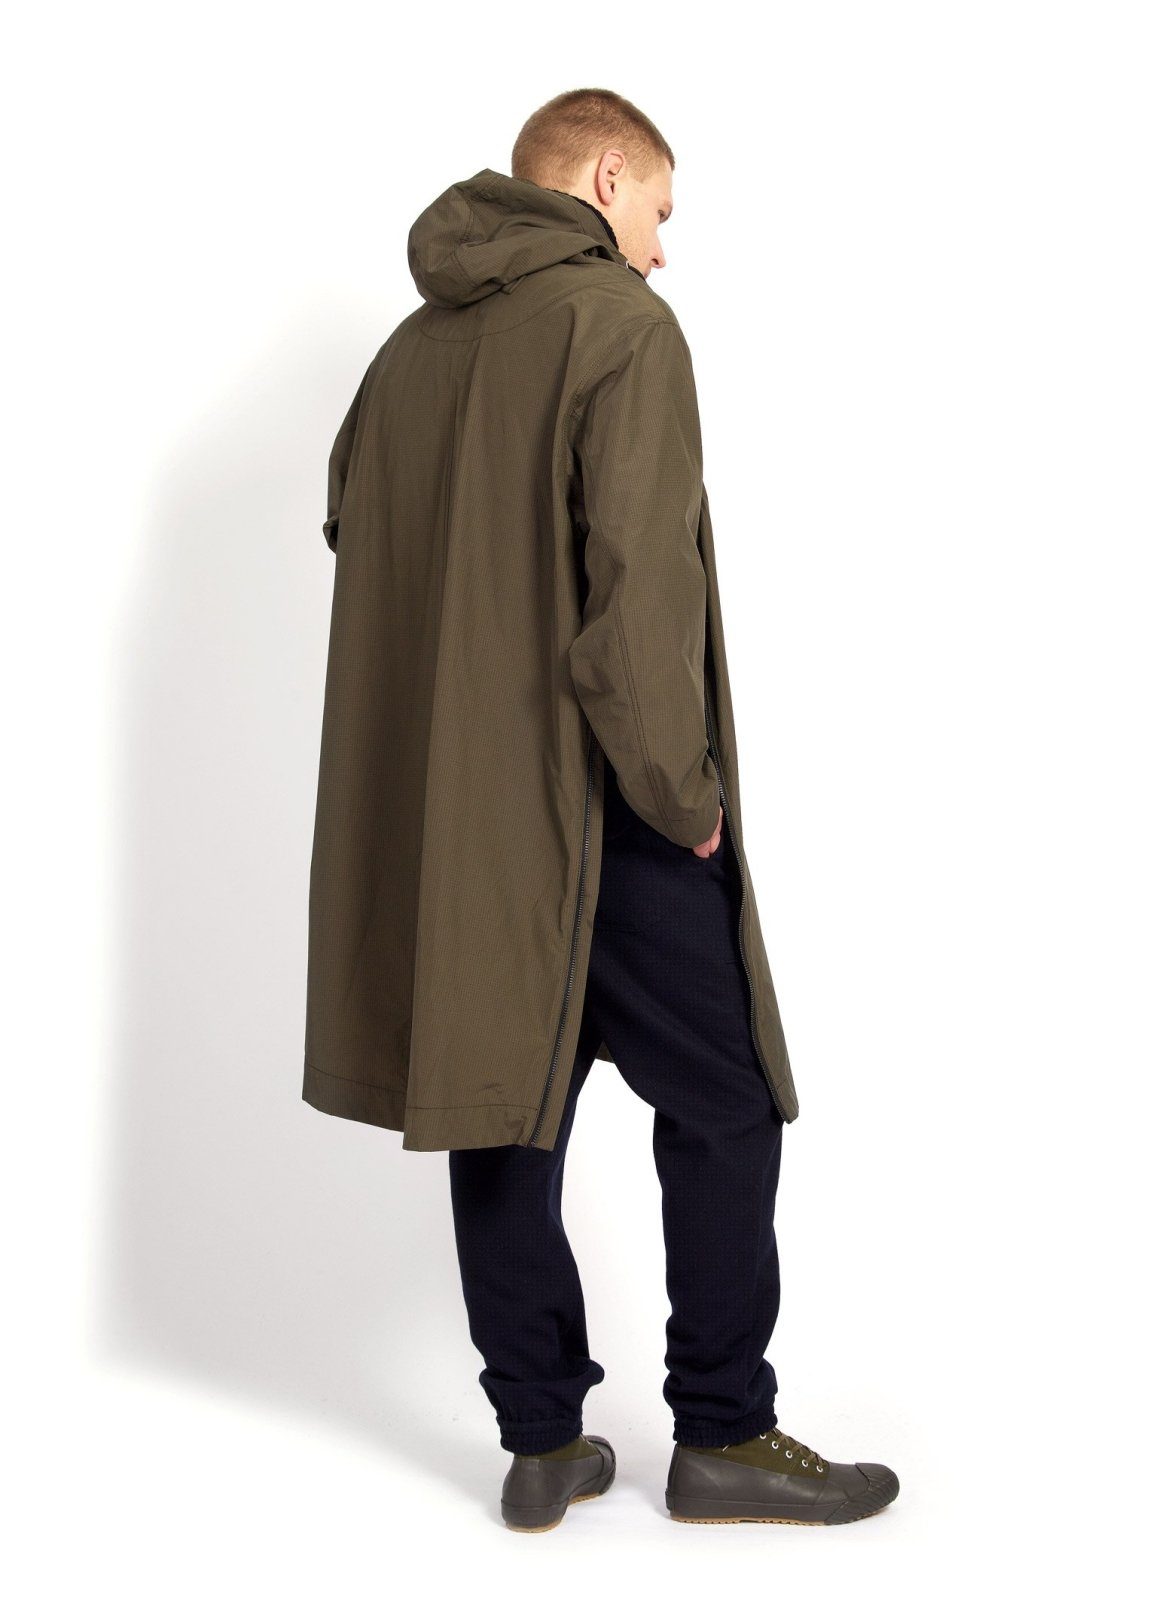 ROALD | Long 2 Zipper Spacious Anorak | Tech Army | €450 -HANSEN Garments- HANSEN Garments